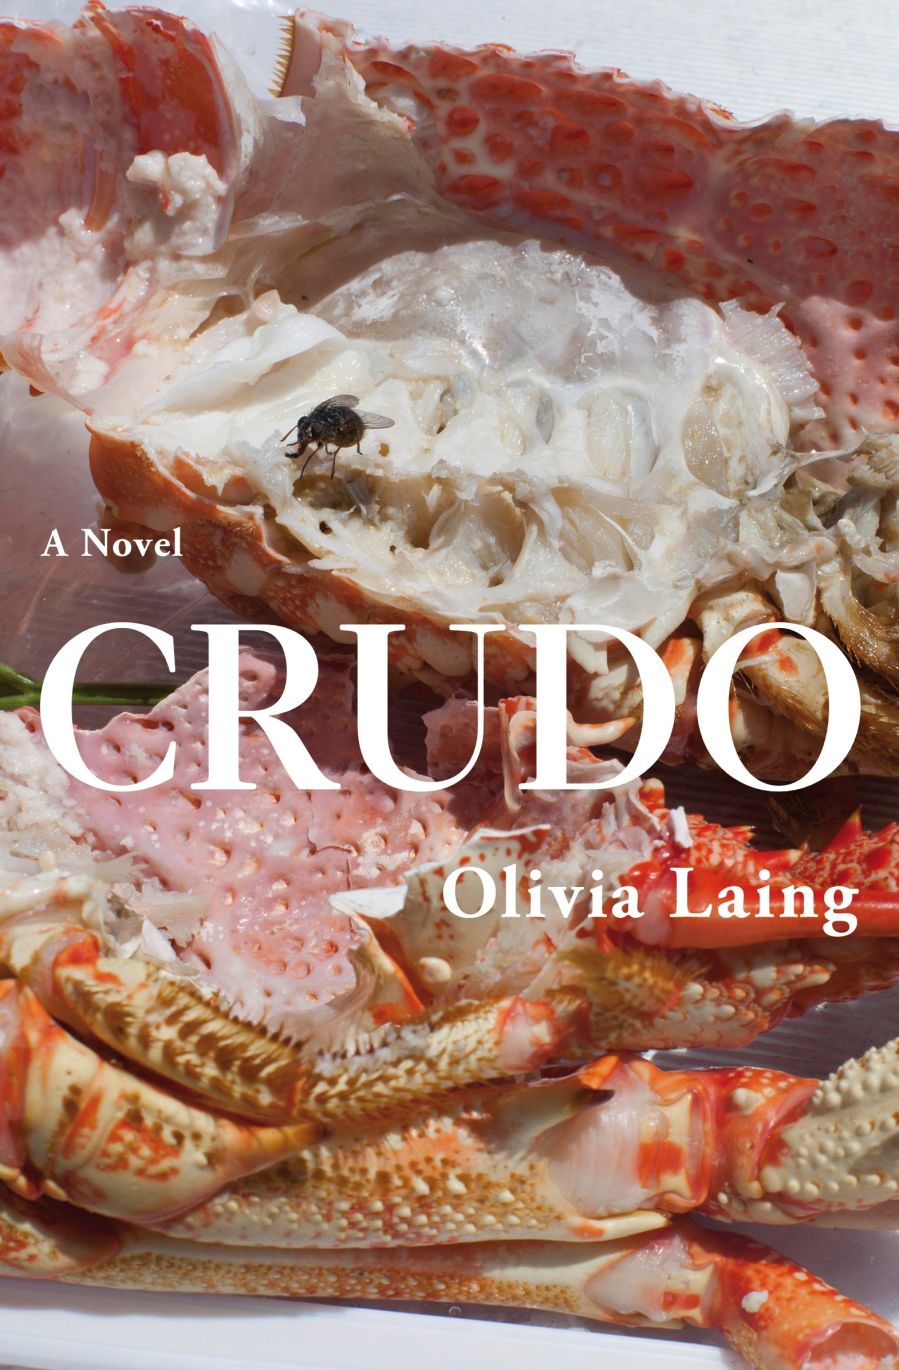 Crudo by Olivia Laing.